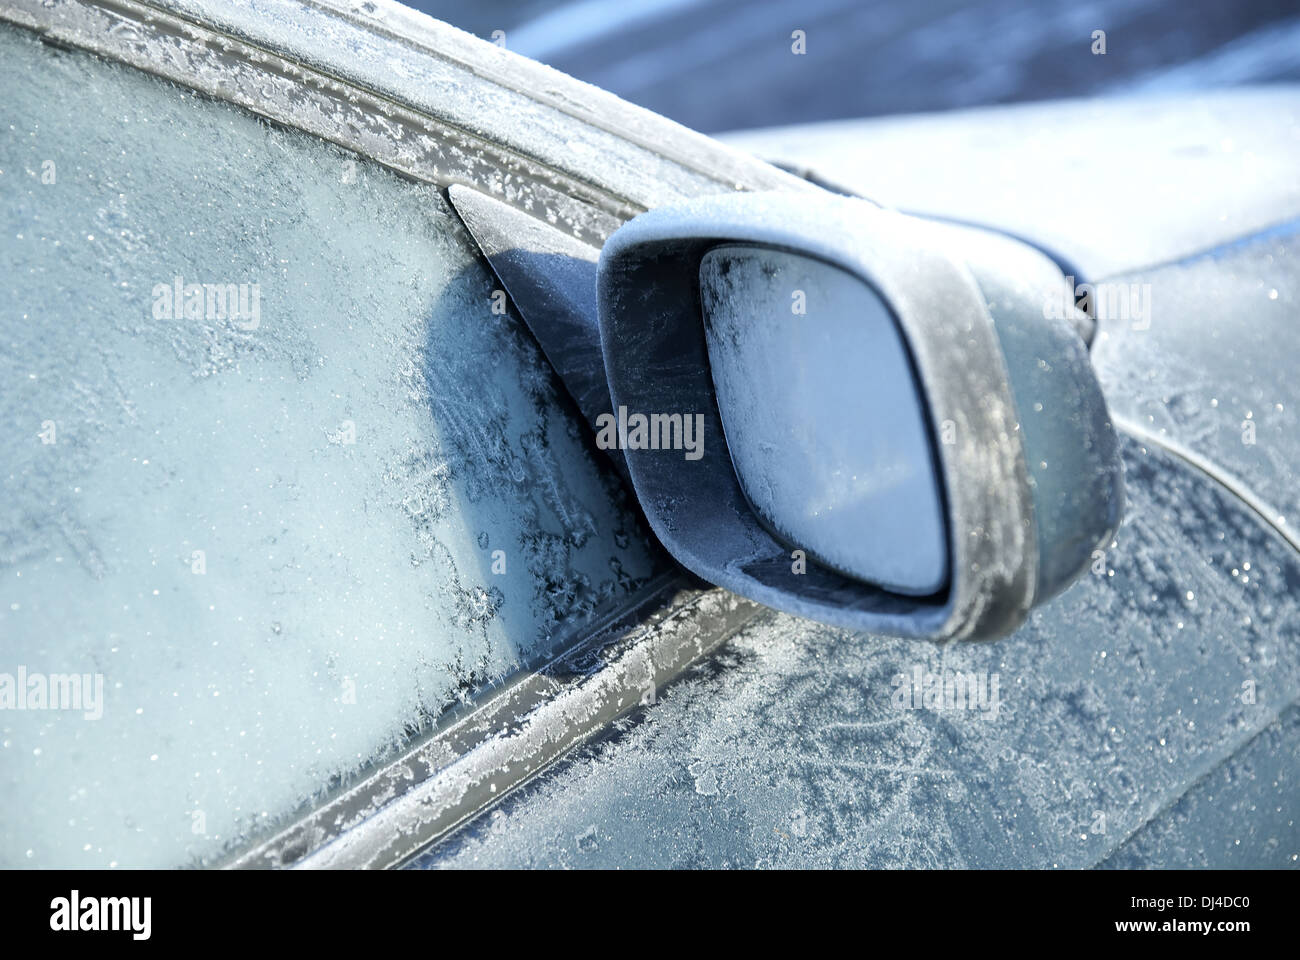 Außenspiegel des Autos mit Regen Stockfotografie - Alamy